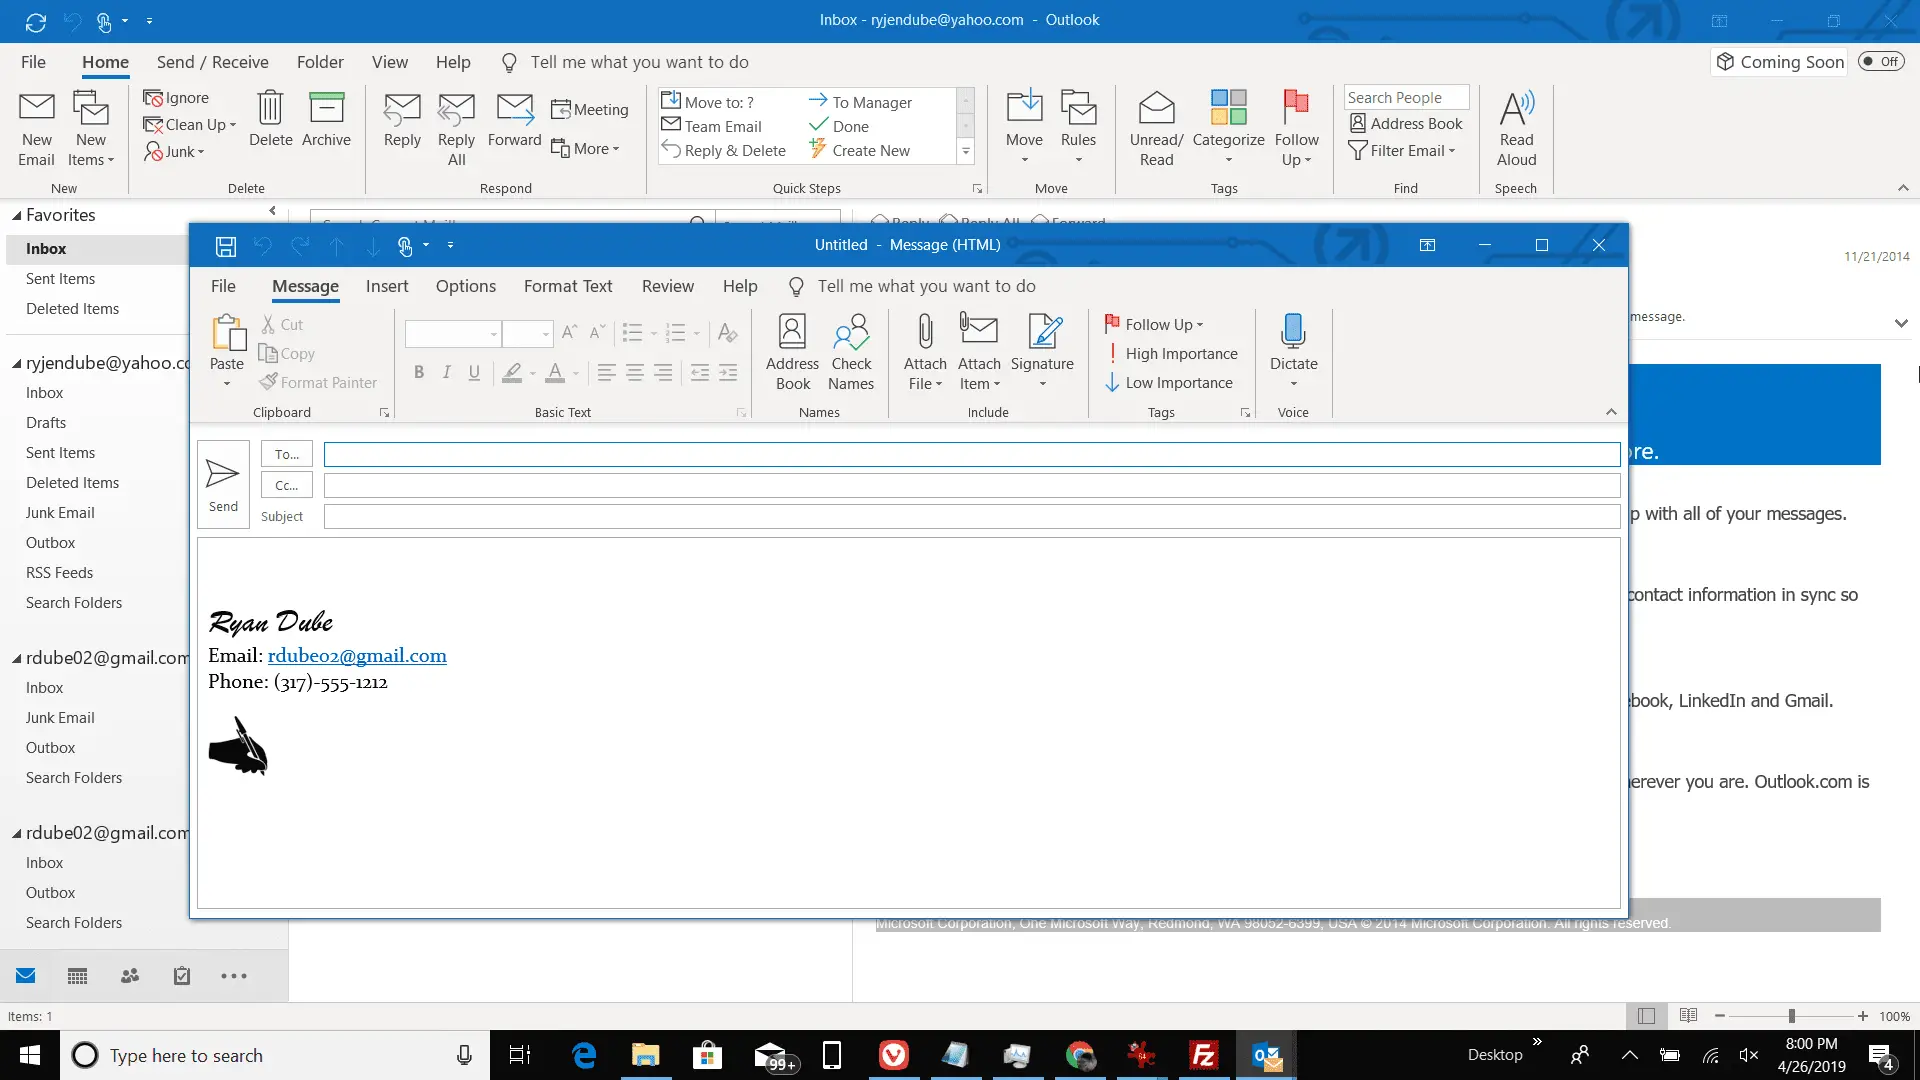 Captura de tela da criação de uma nova mensagem no Outlook